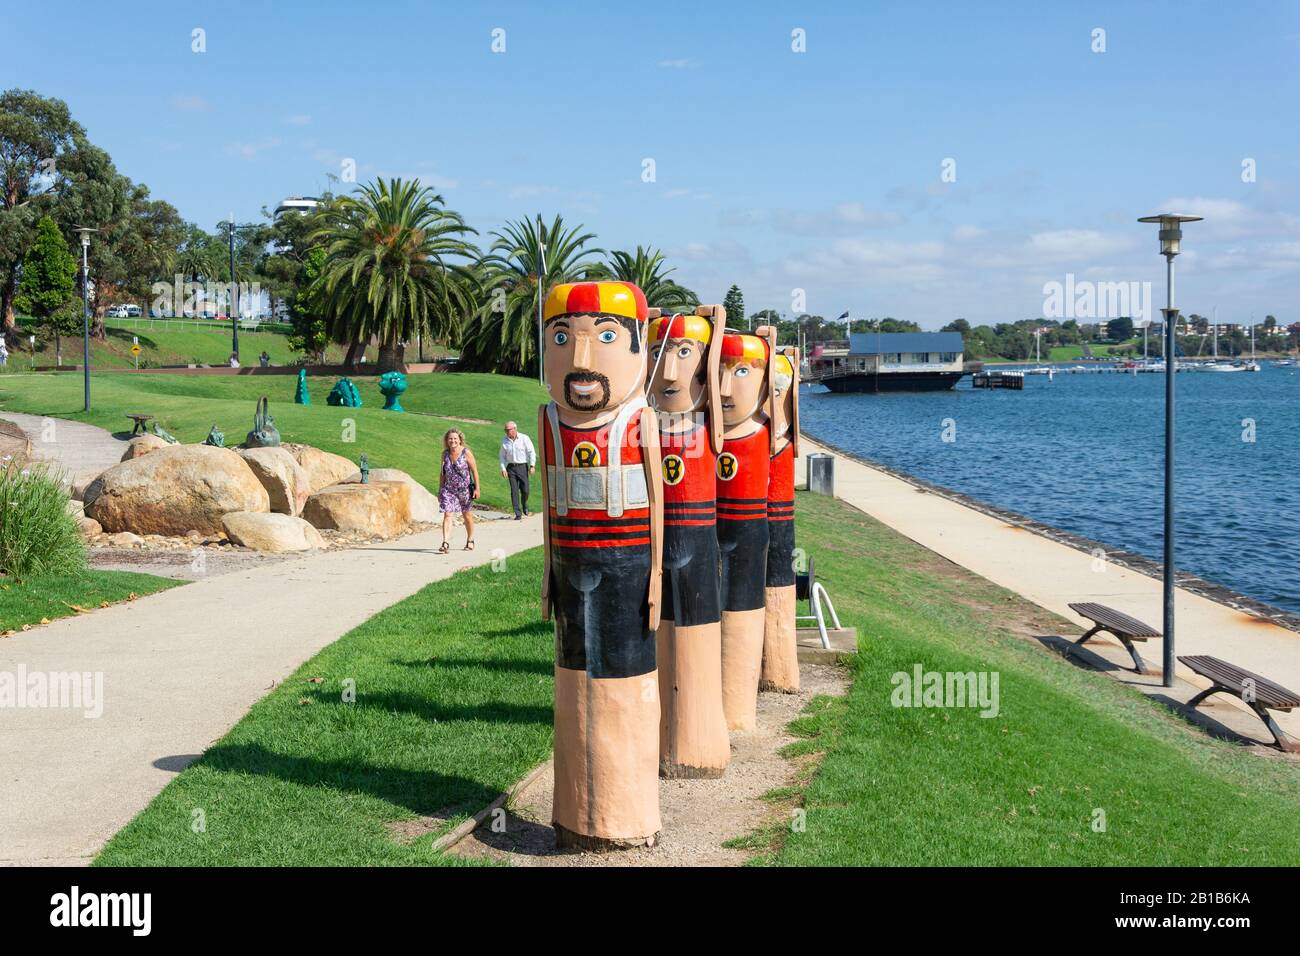 Les bardeaux de personnage de Gareautrain sur les rives du port, Geelong, Grant County, Victoria, Australie Banque D'Images